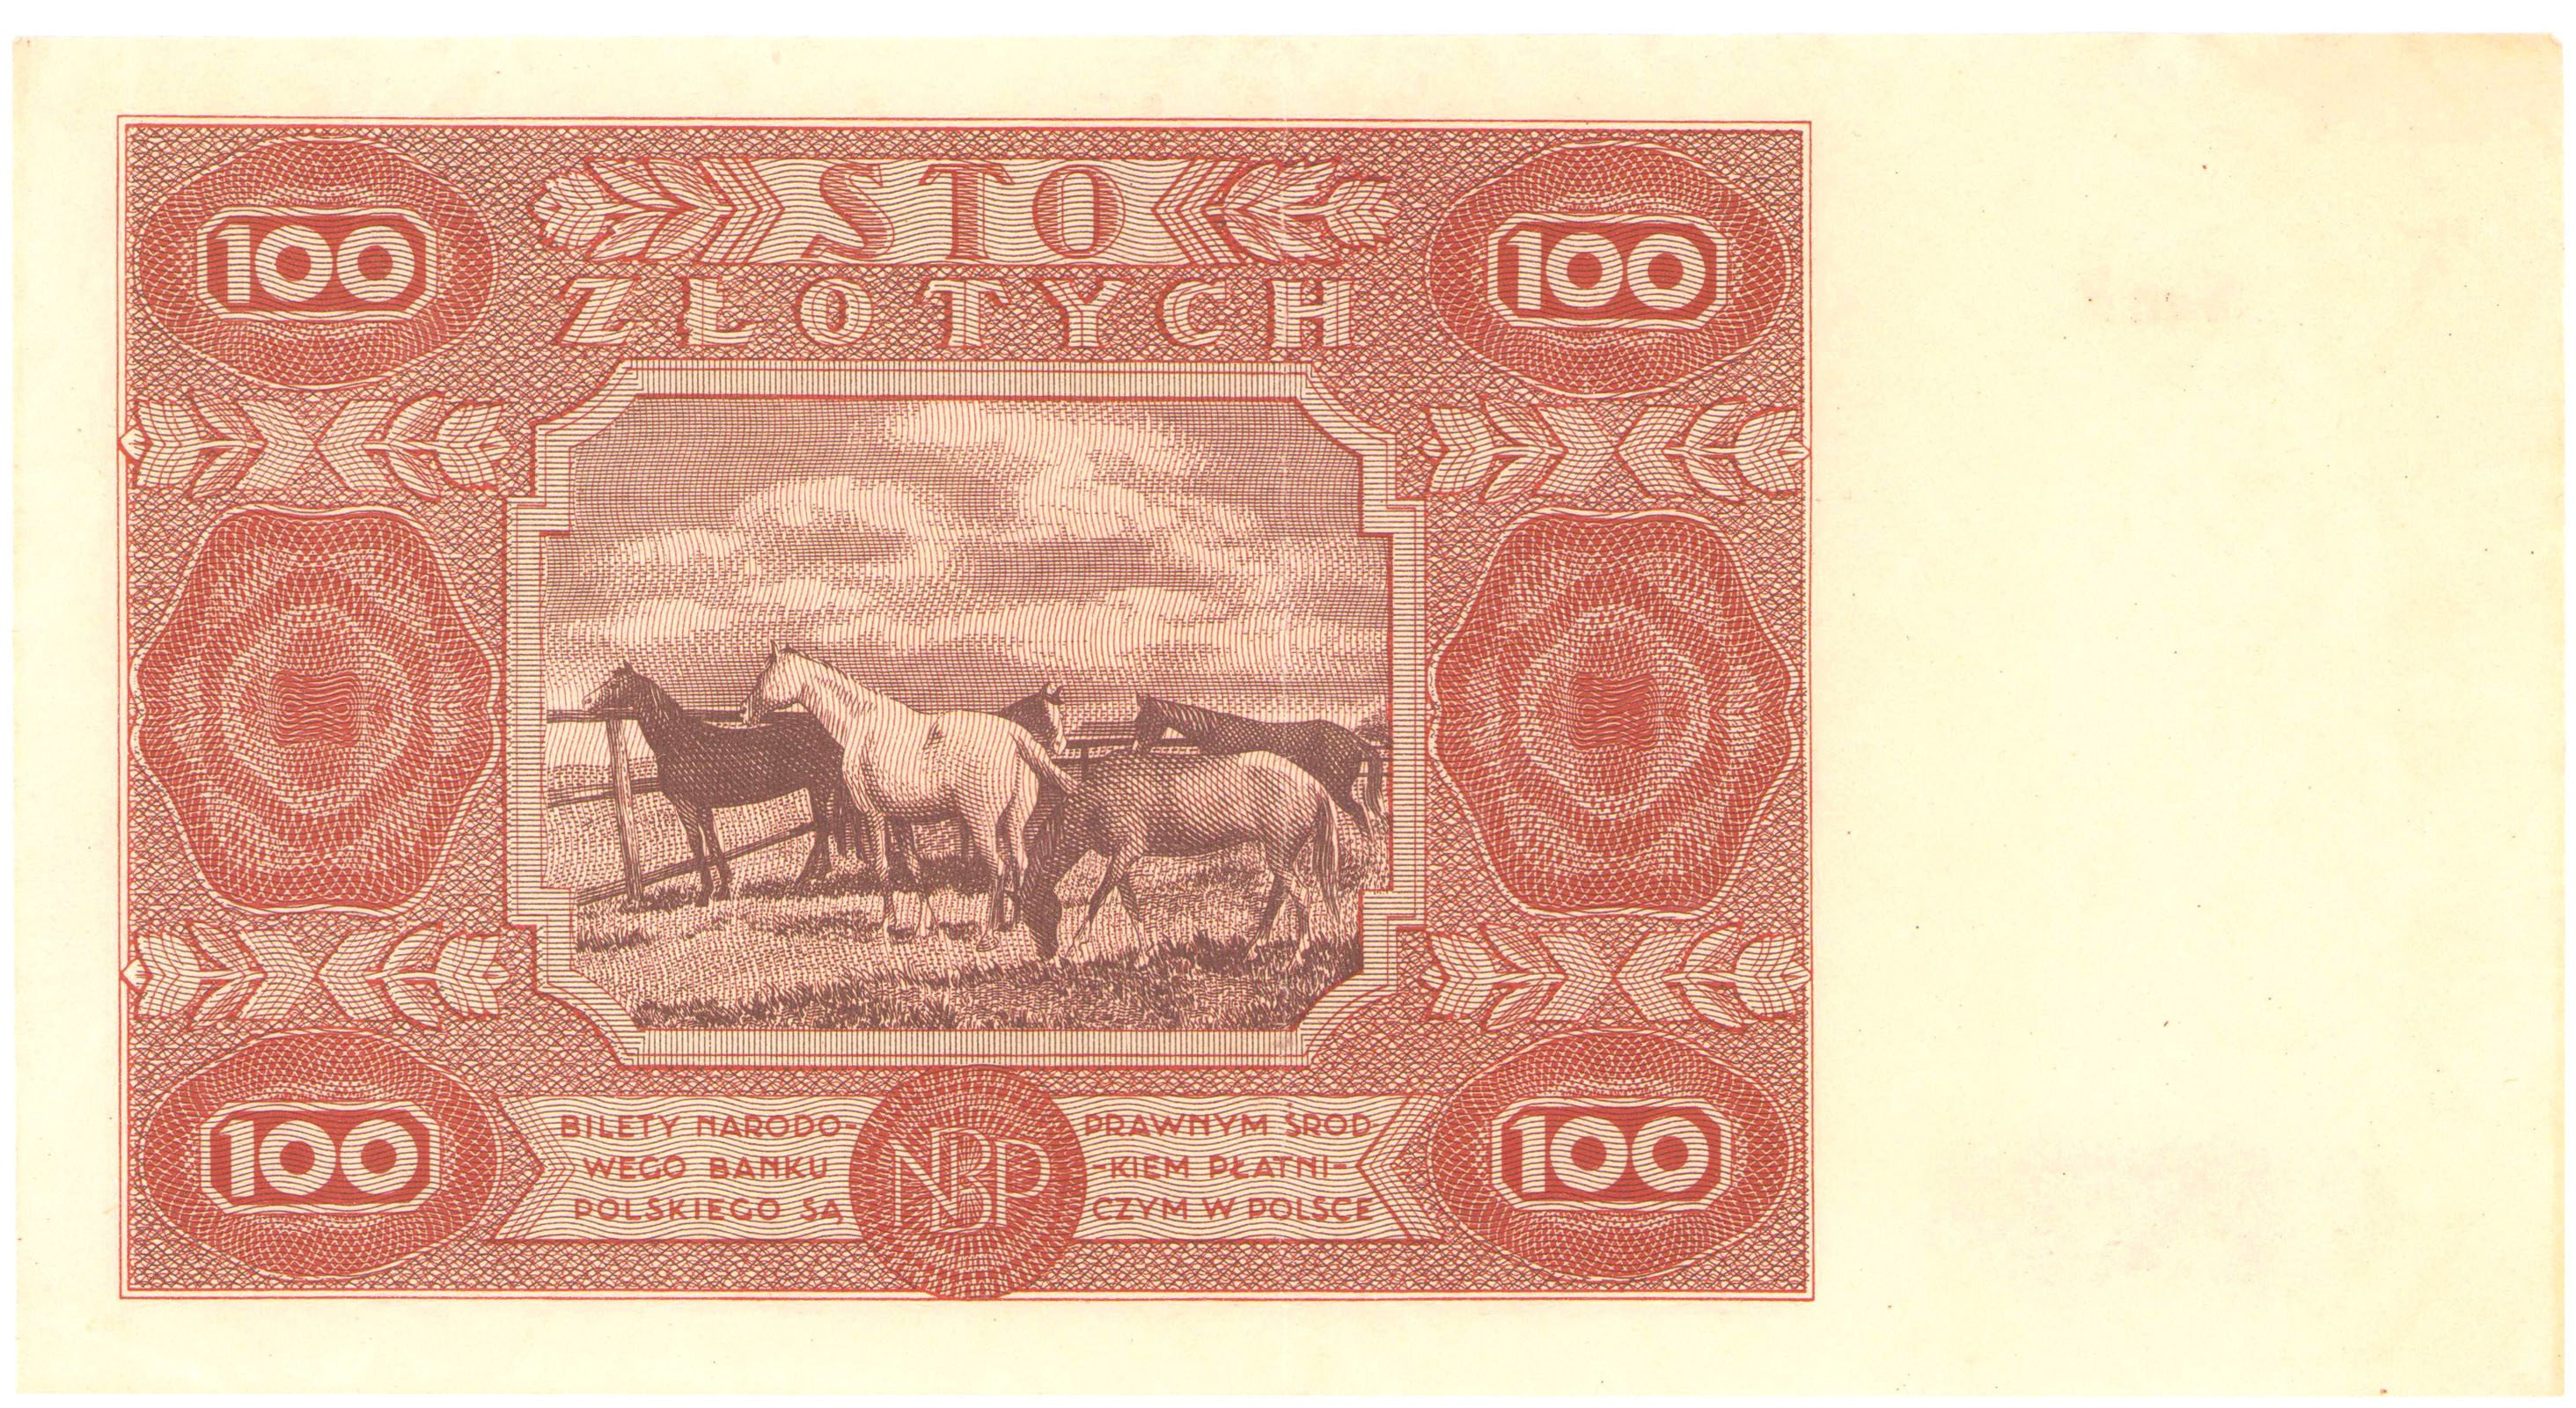 100 złotych 1947 seria F - RZADKOŚĆ R4